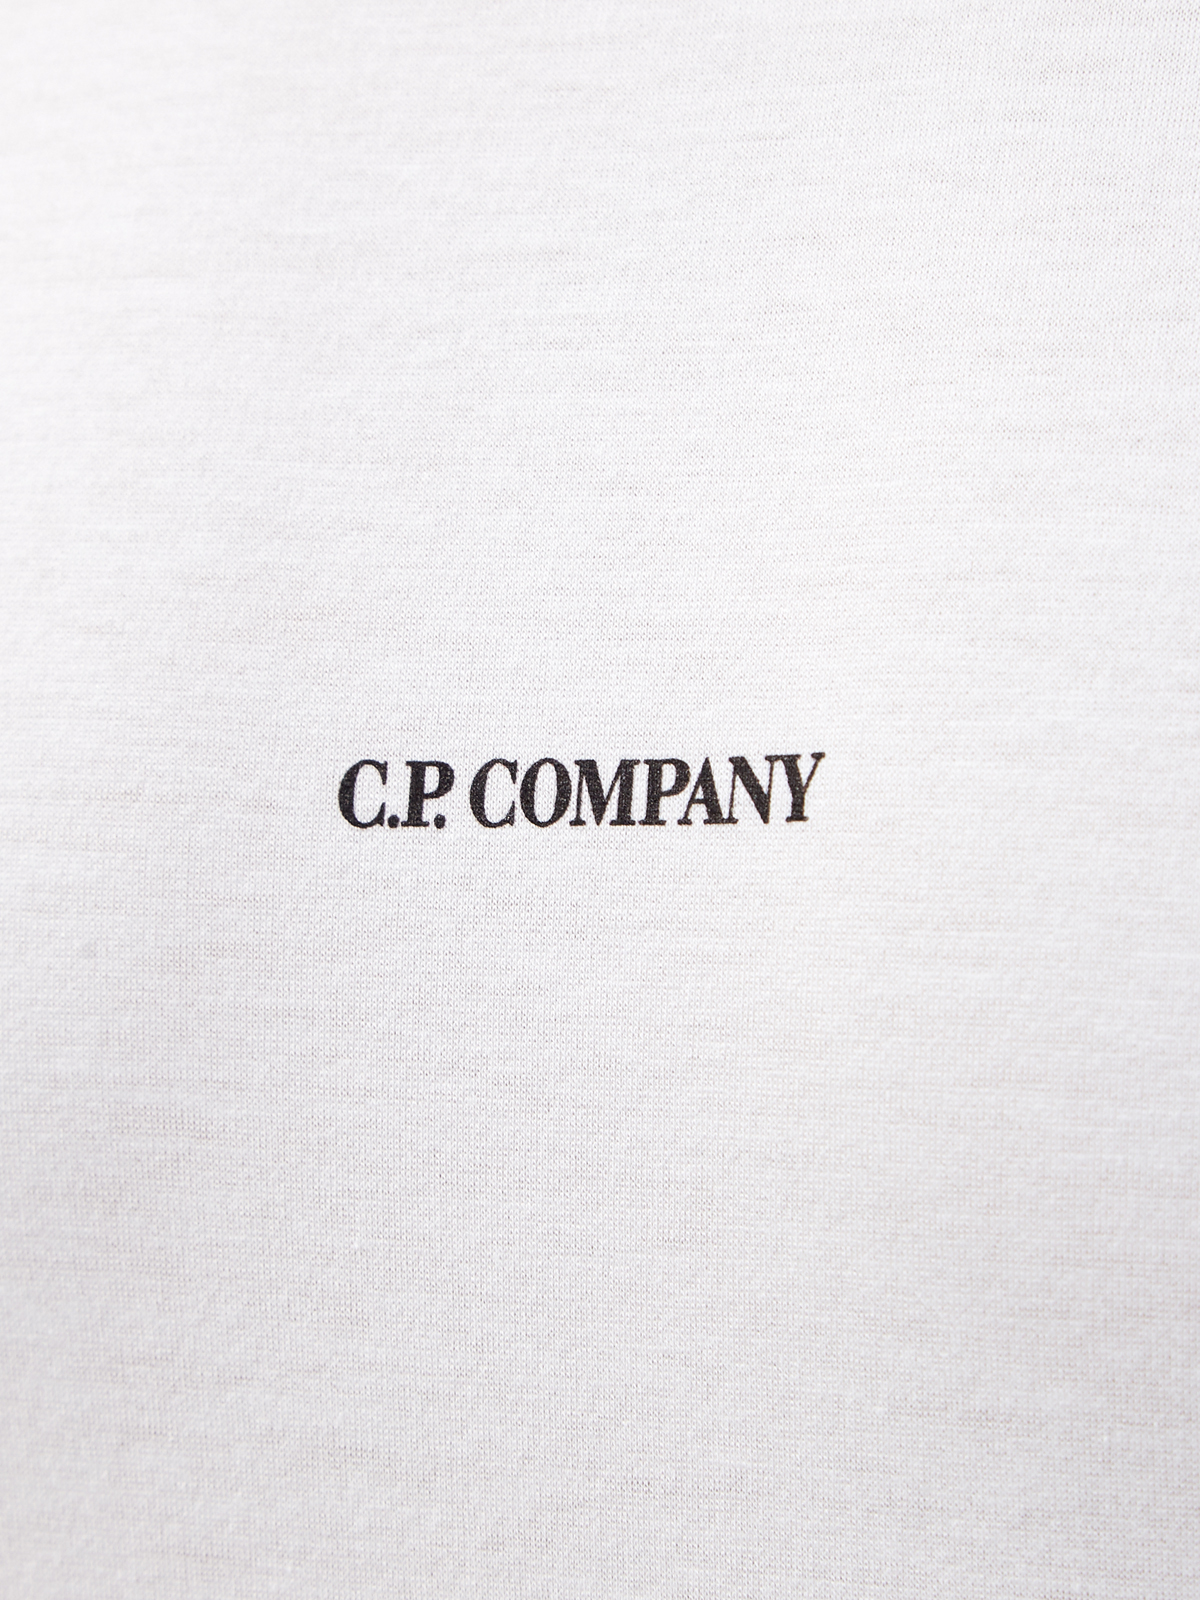 Лонгслив из тонкого хлопка джерси с контрастным логотипом C.P.COMPANY, цвет белый, размер 48;50;54 - фото 5